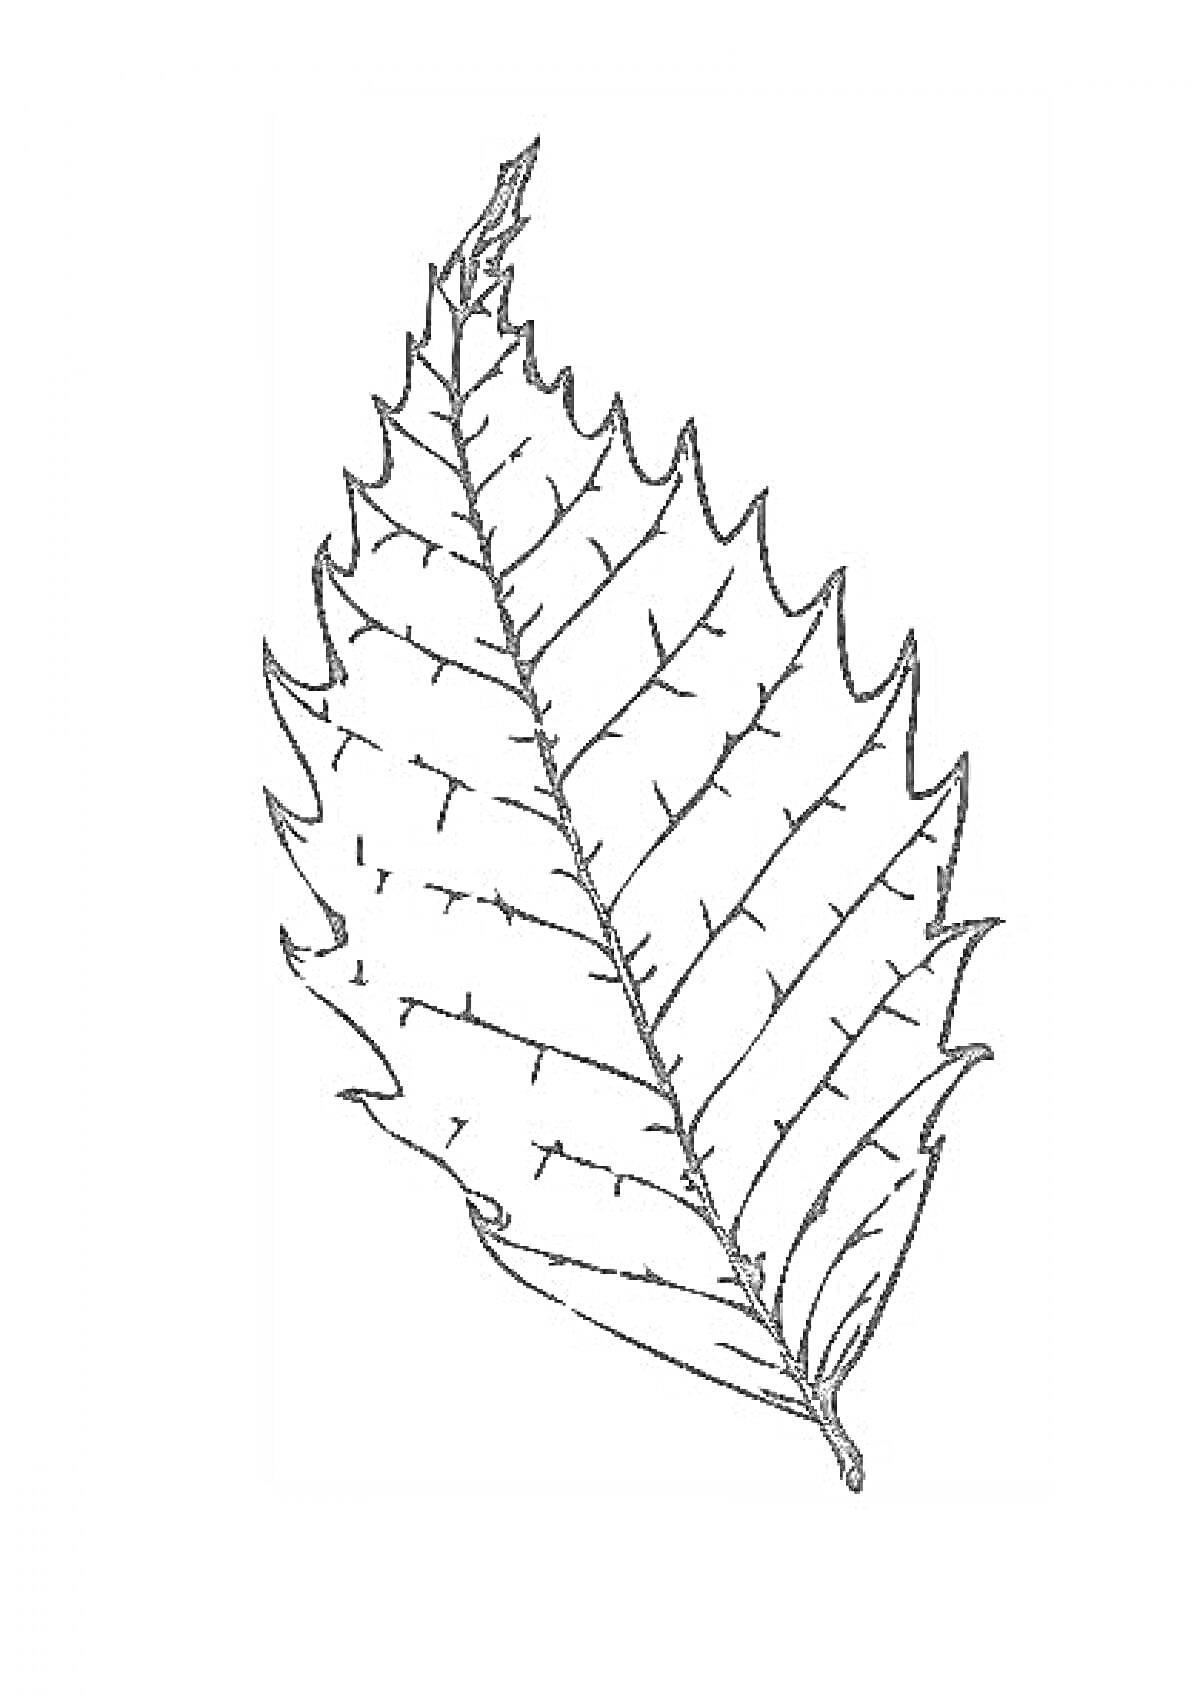 Лист дерева с зубчатыми краями и прожилками